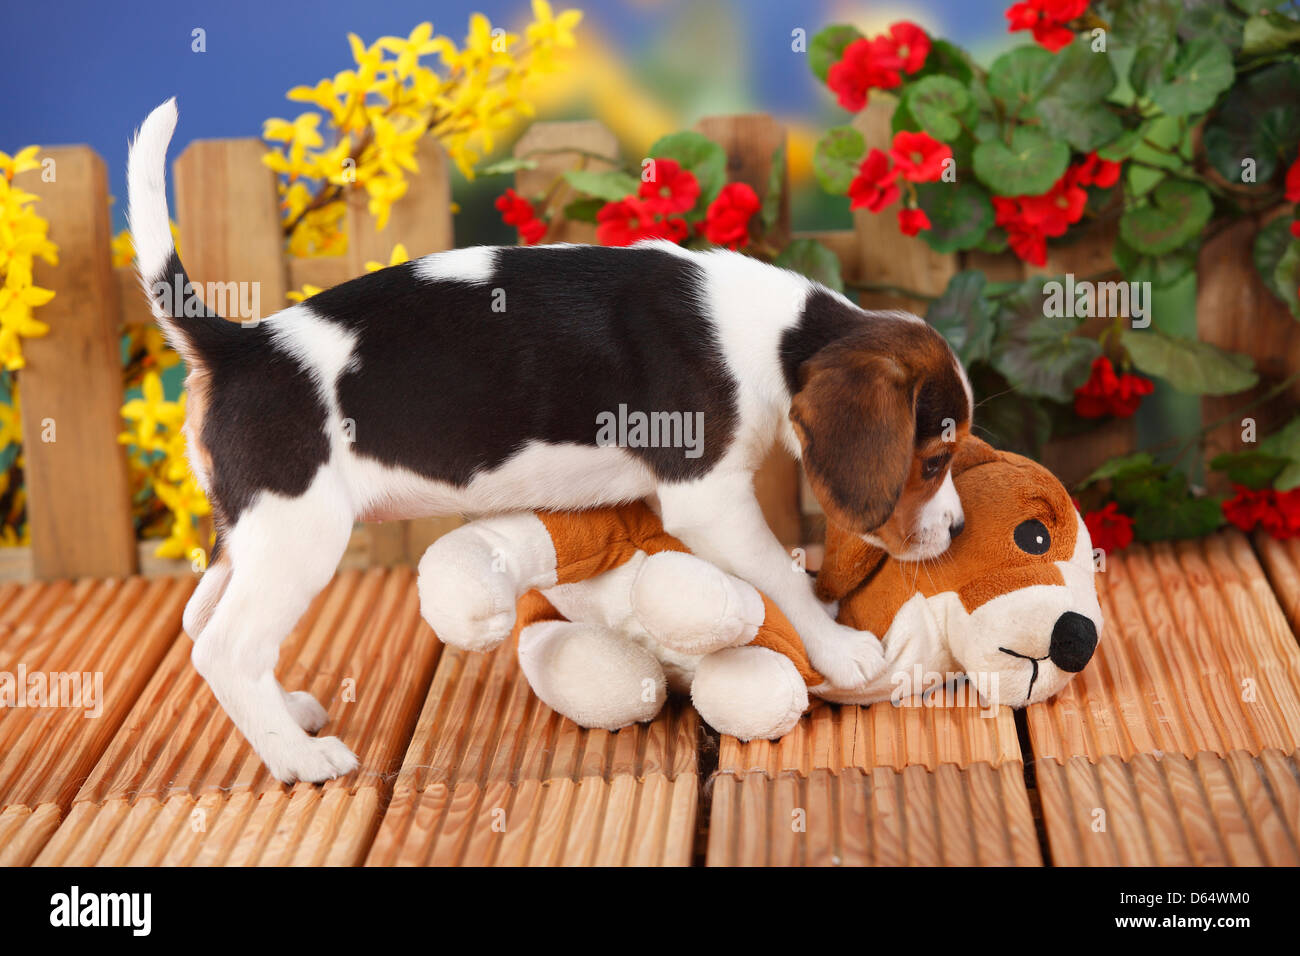 Beagle, Welpen, 9 Wochen, mit kuscheln Spielzeug | Beagle, Welpe, 9 Wochen,  Mit Kuscheltier / Spielzeug Stockfotografie - Alamy